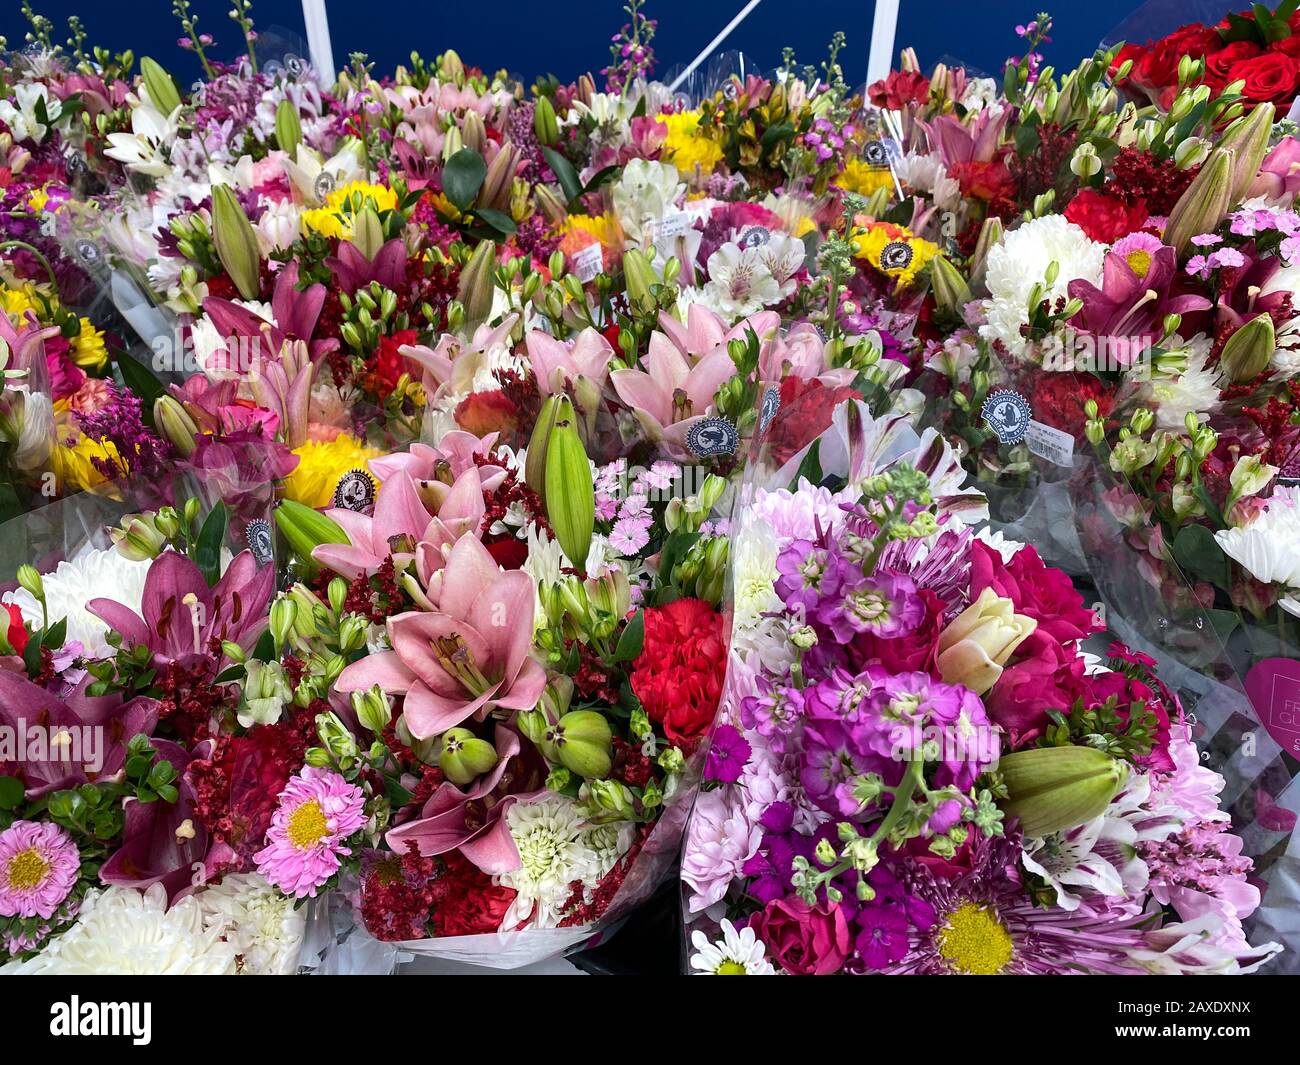 Orlando, FL/USA-2/11/20: Plusieurs bouquets de fleurs différentes à une épicerie dans l'eau attendant qu'un client les achète. Concept amour, romain Banque D'Images